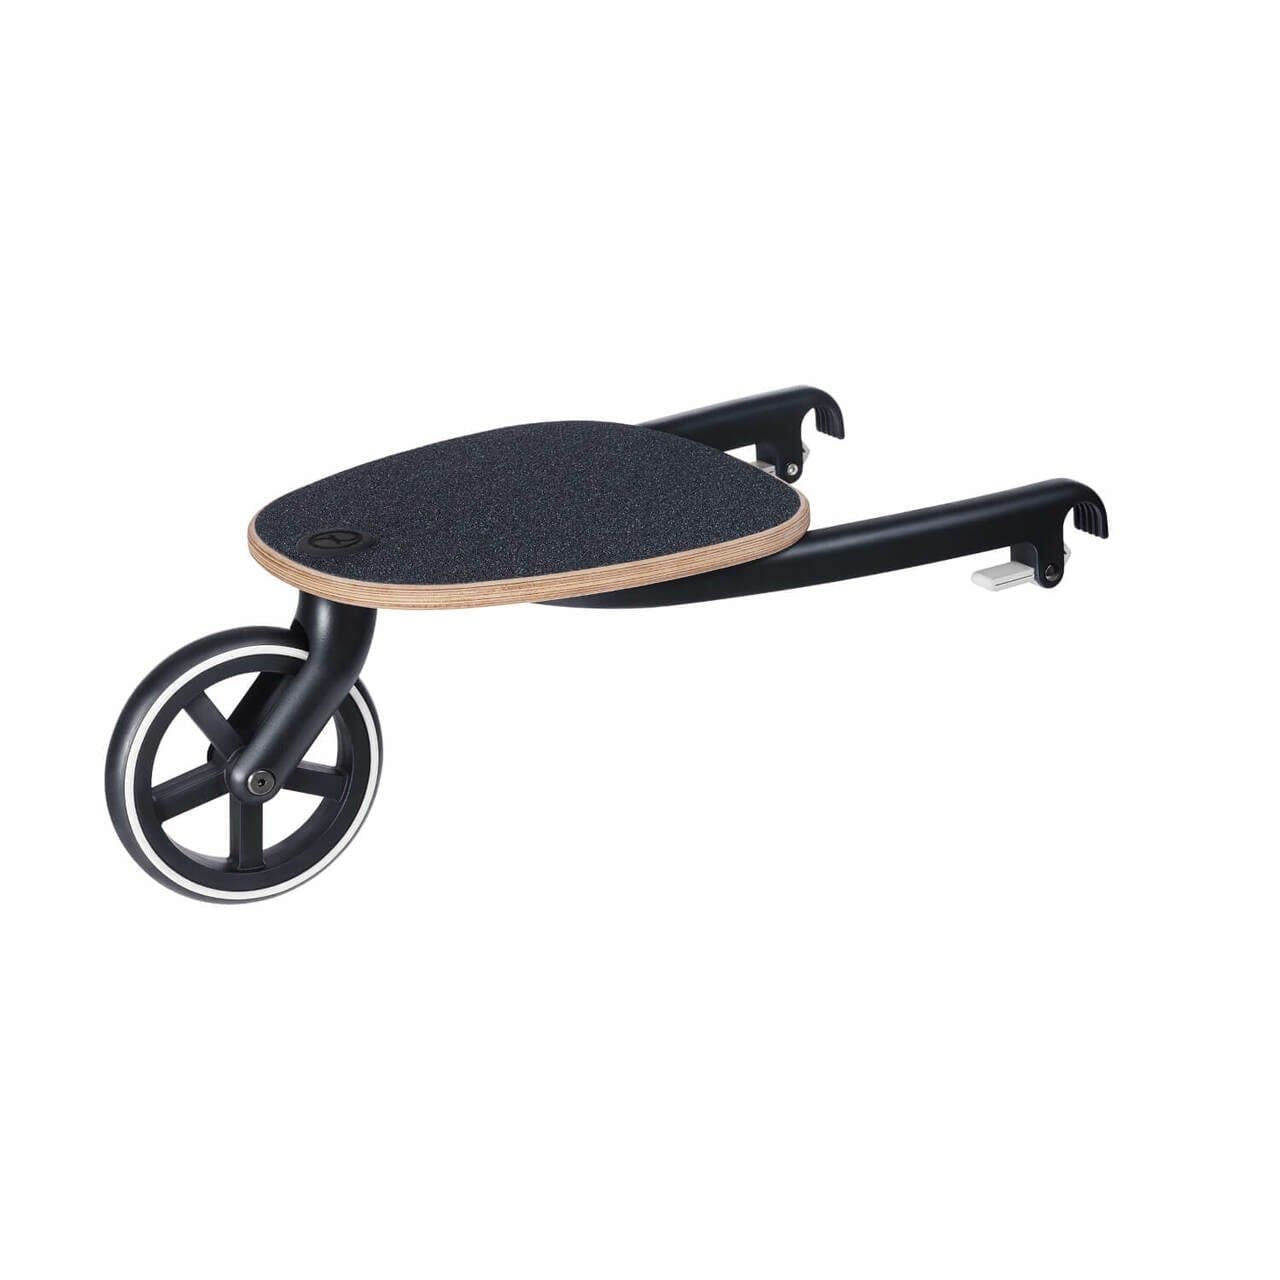 Cybex Stroller Kid Board - Black 518002951 4058511411743
